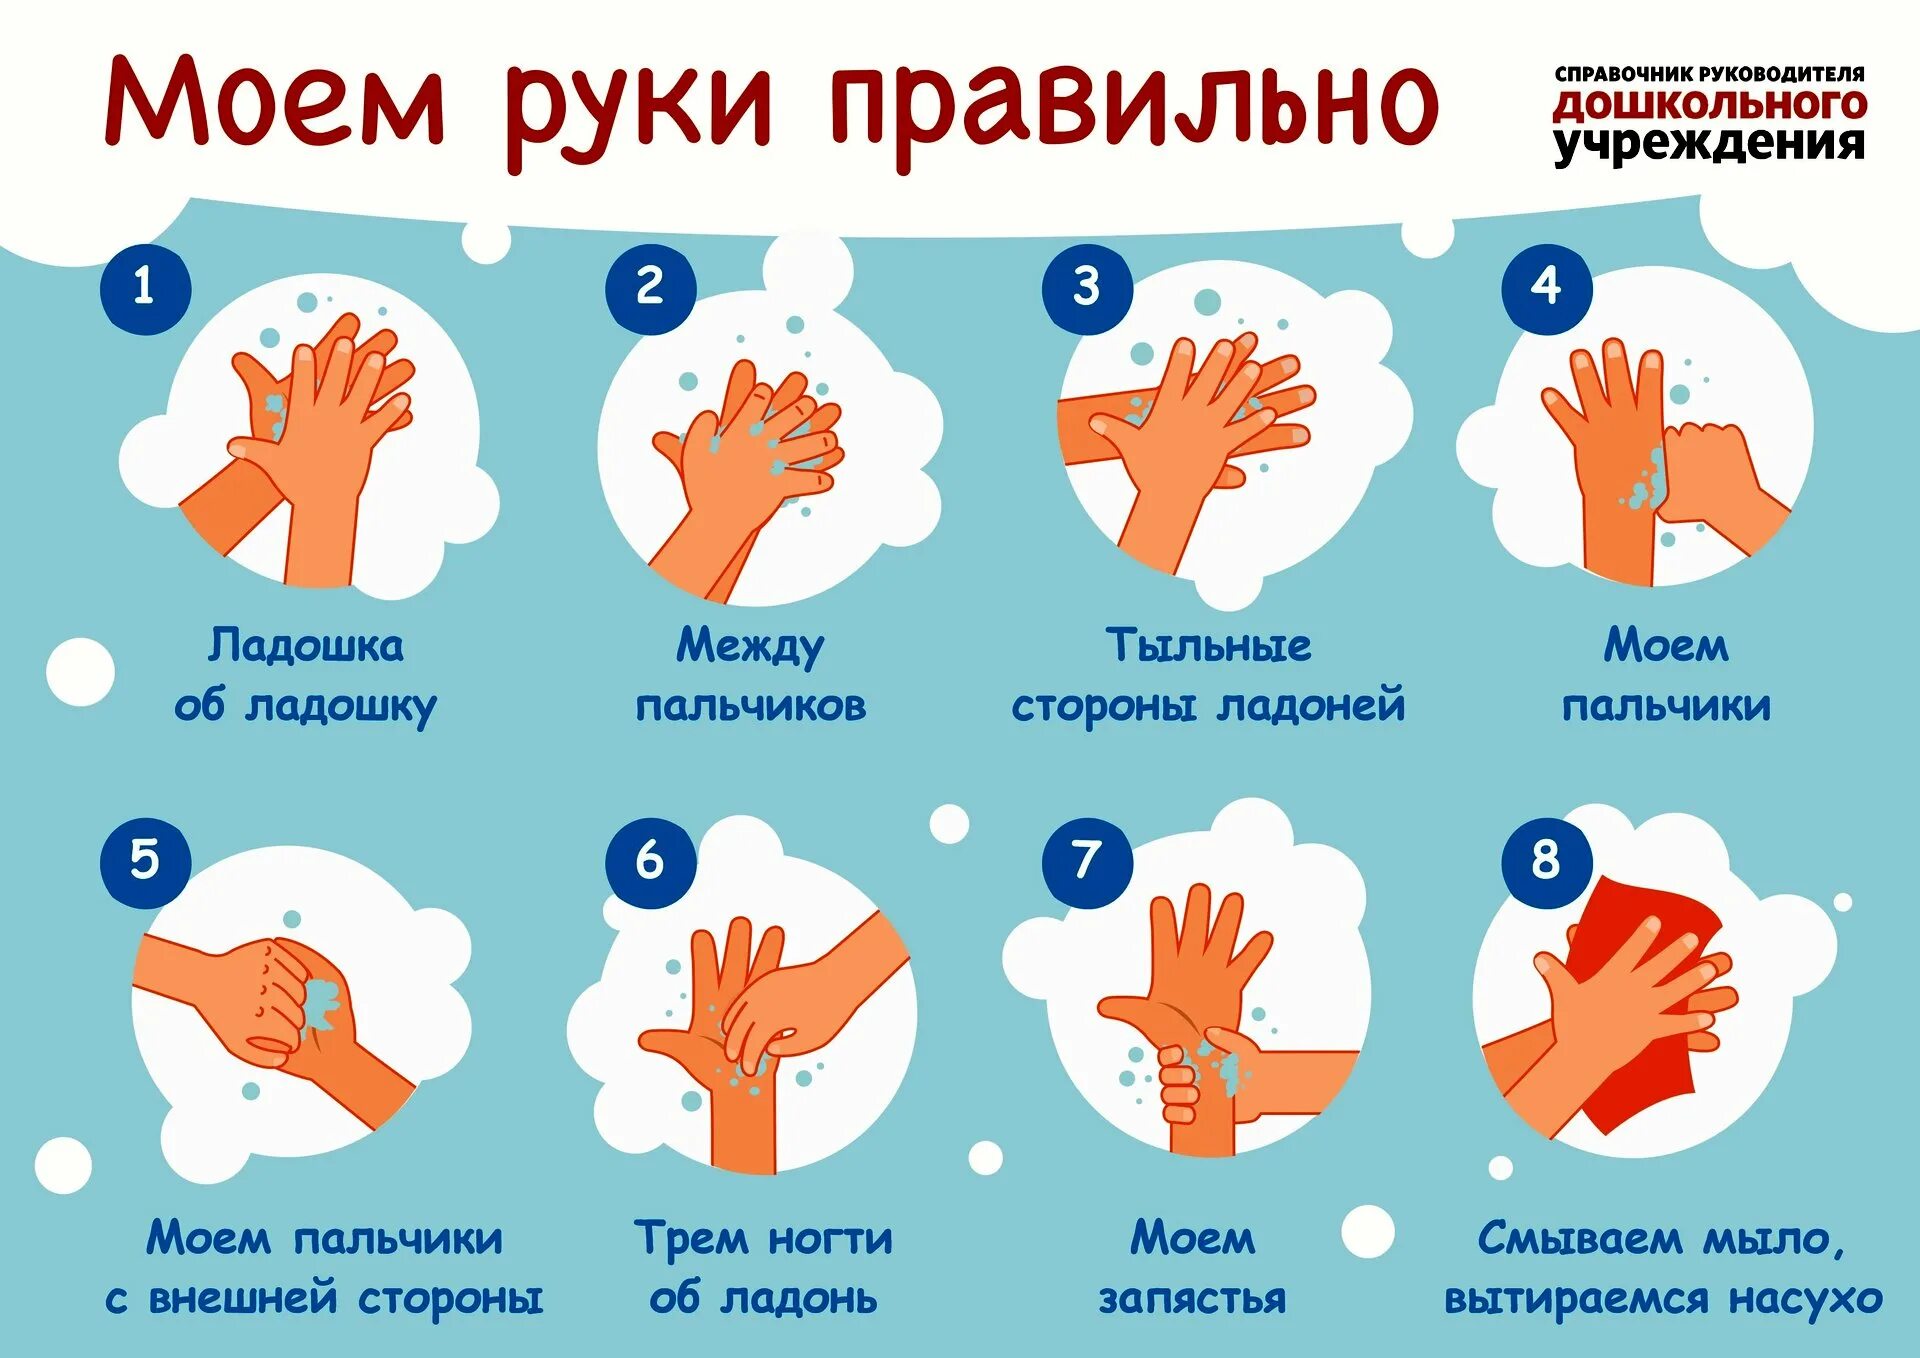 Мытьё рук. Алгоритм мытья рук. Памятка мытье рук для детей. Как правильн Оымт ьруки. КККМ правильн омыть руки. Мою руки 3 минуты